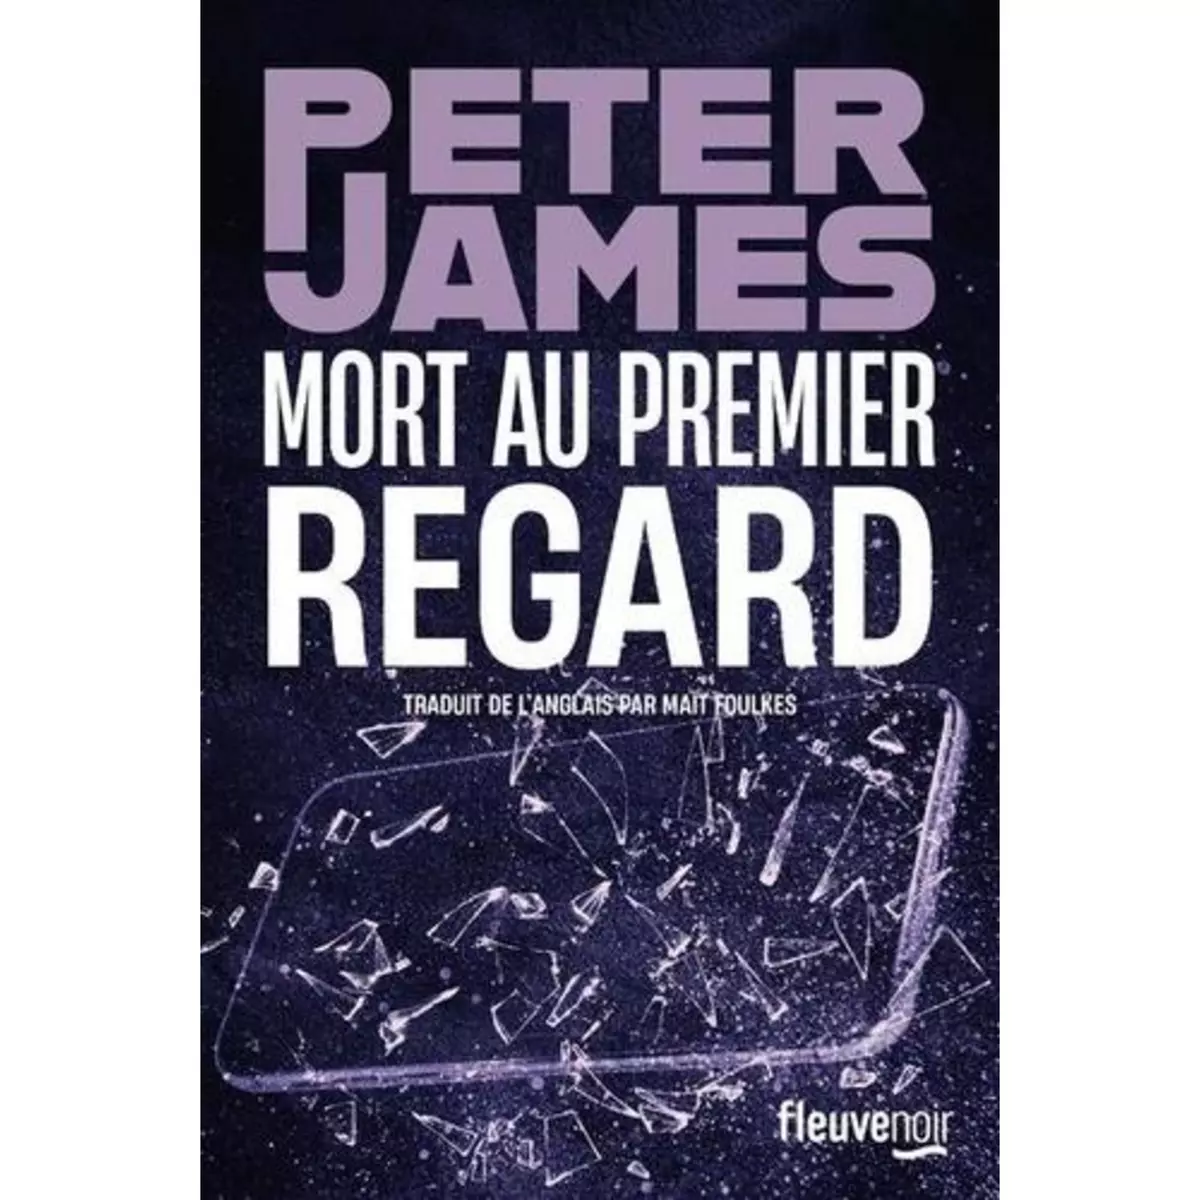  MORT AU PREMIER REGARD, James Peter